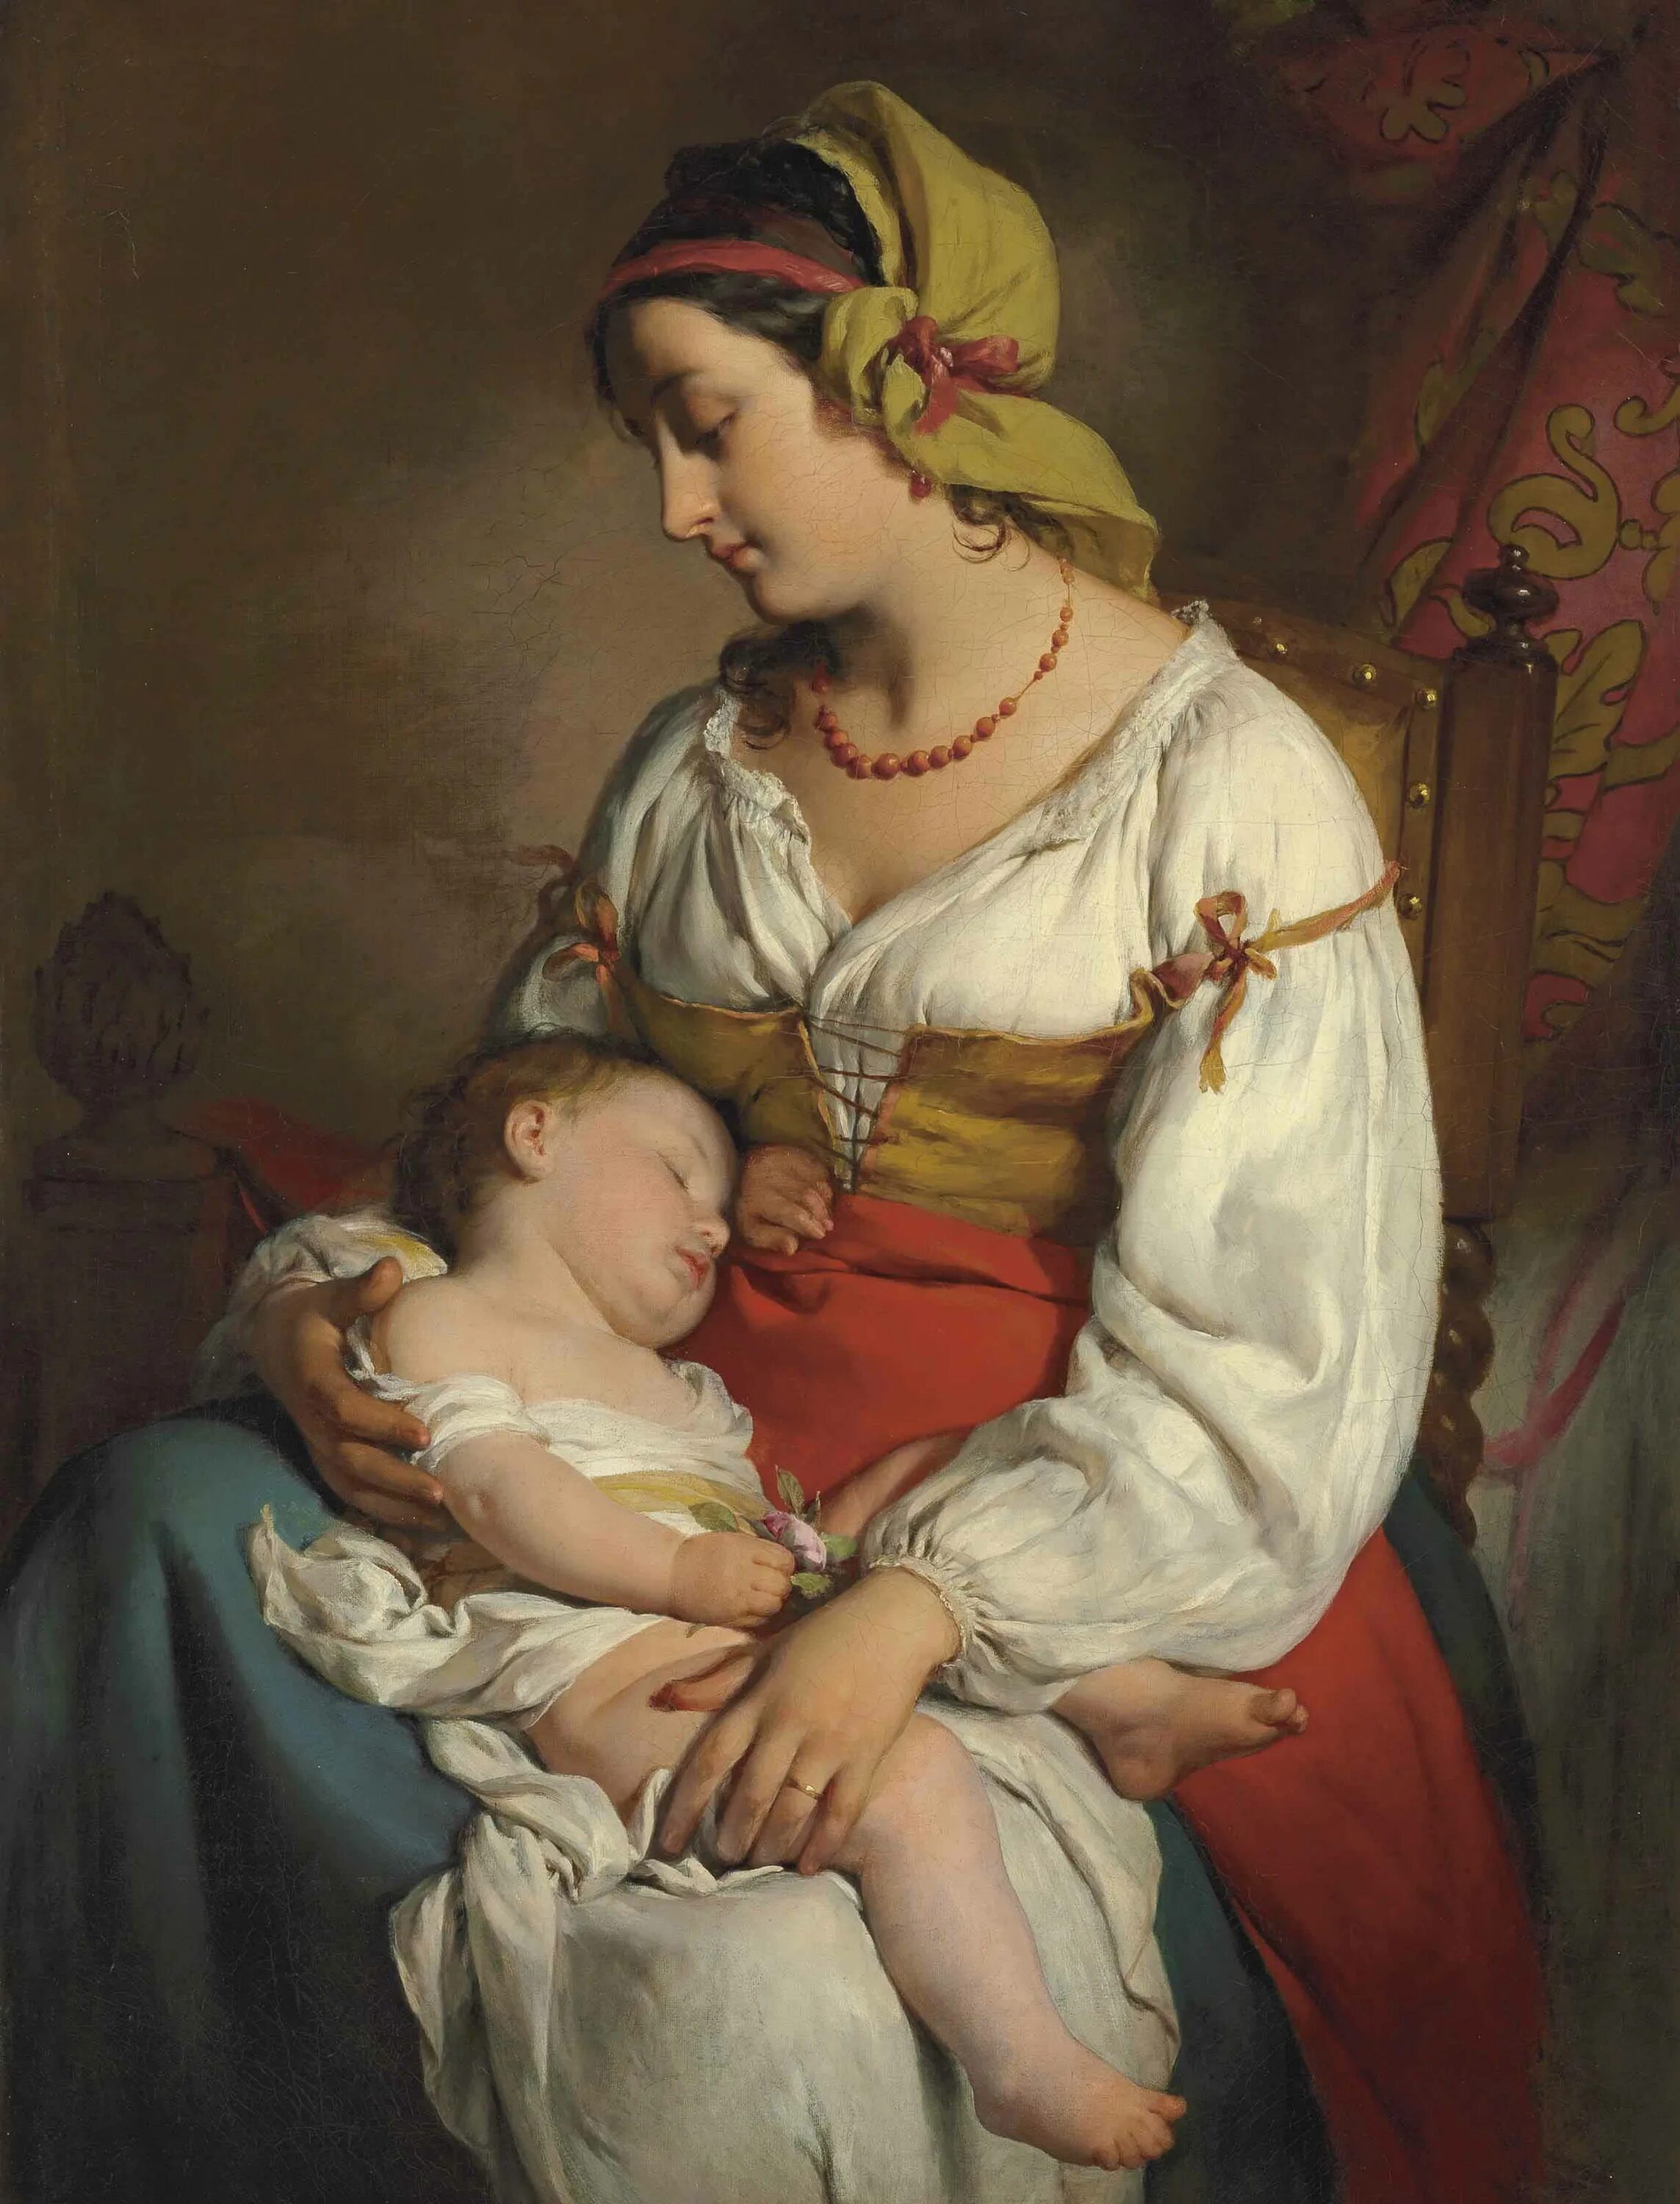 Friedrich von Amerling (1803 – 1887) семья. Friedrich von Amerling 1803-1887 австрийский художник. Материнство история